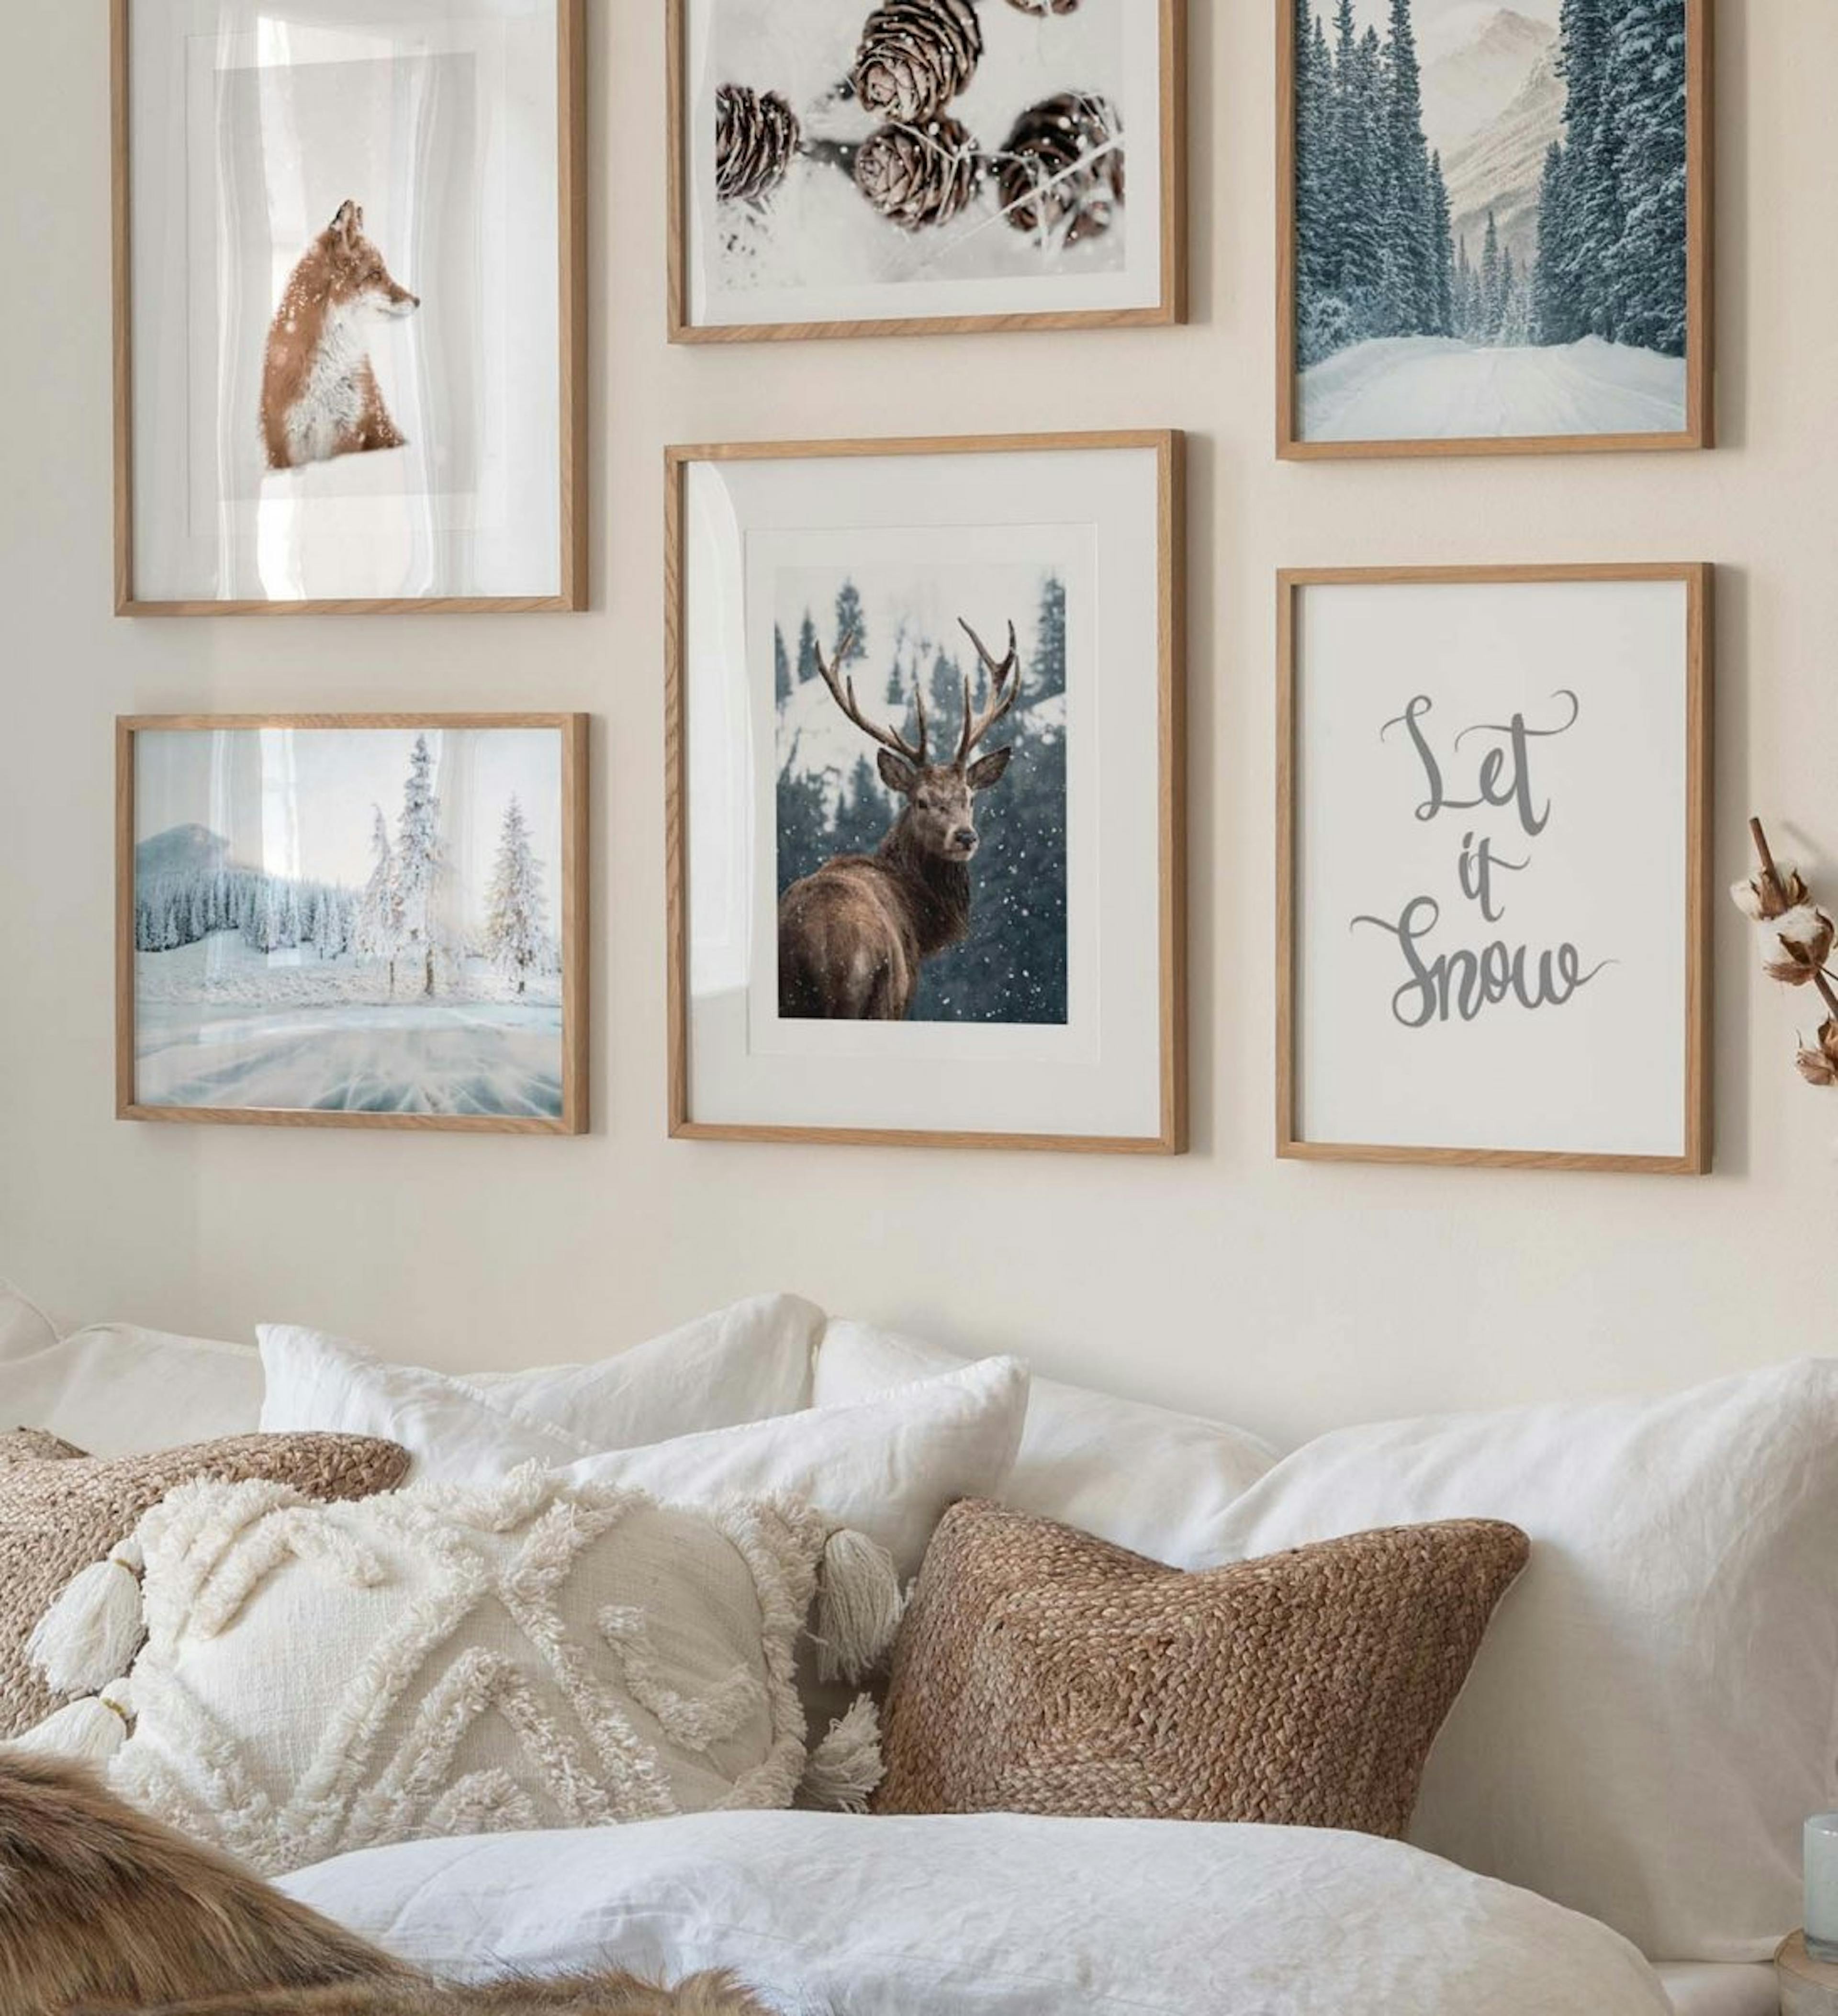 Ściana z galerią z zimowymi plakatami szyszek, lisa i jelenia w połączeniu z zimowymi fotografiami natury i nadrukami z cytatami